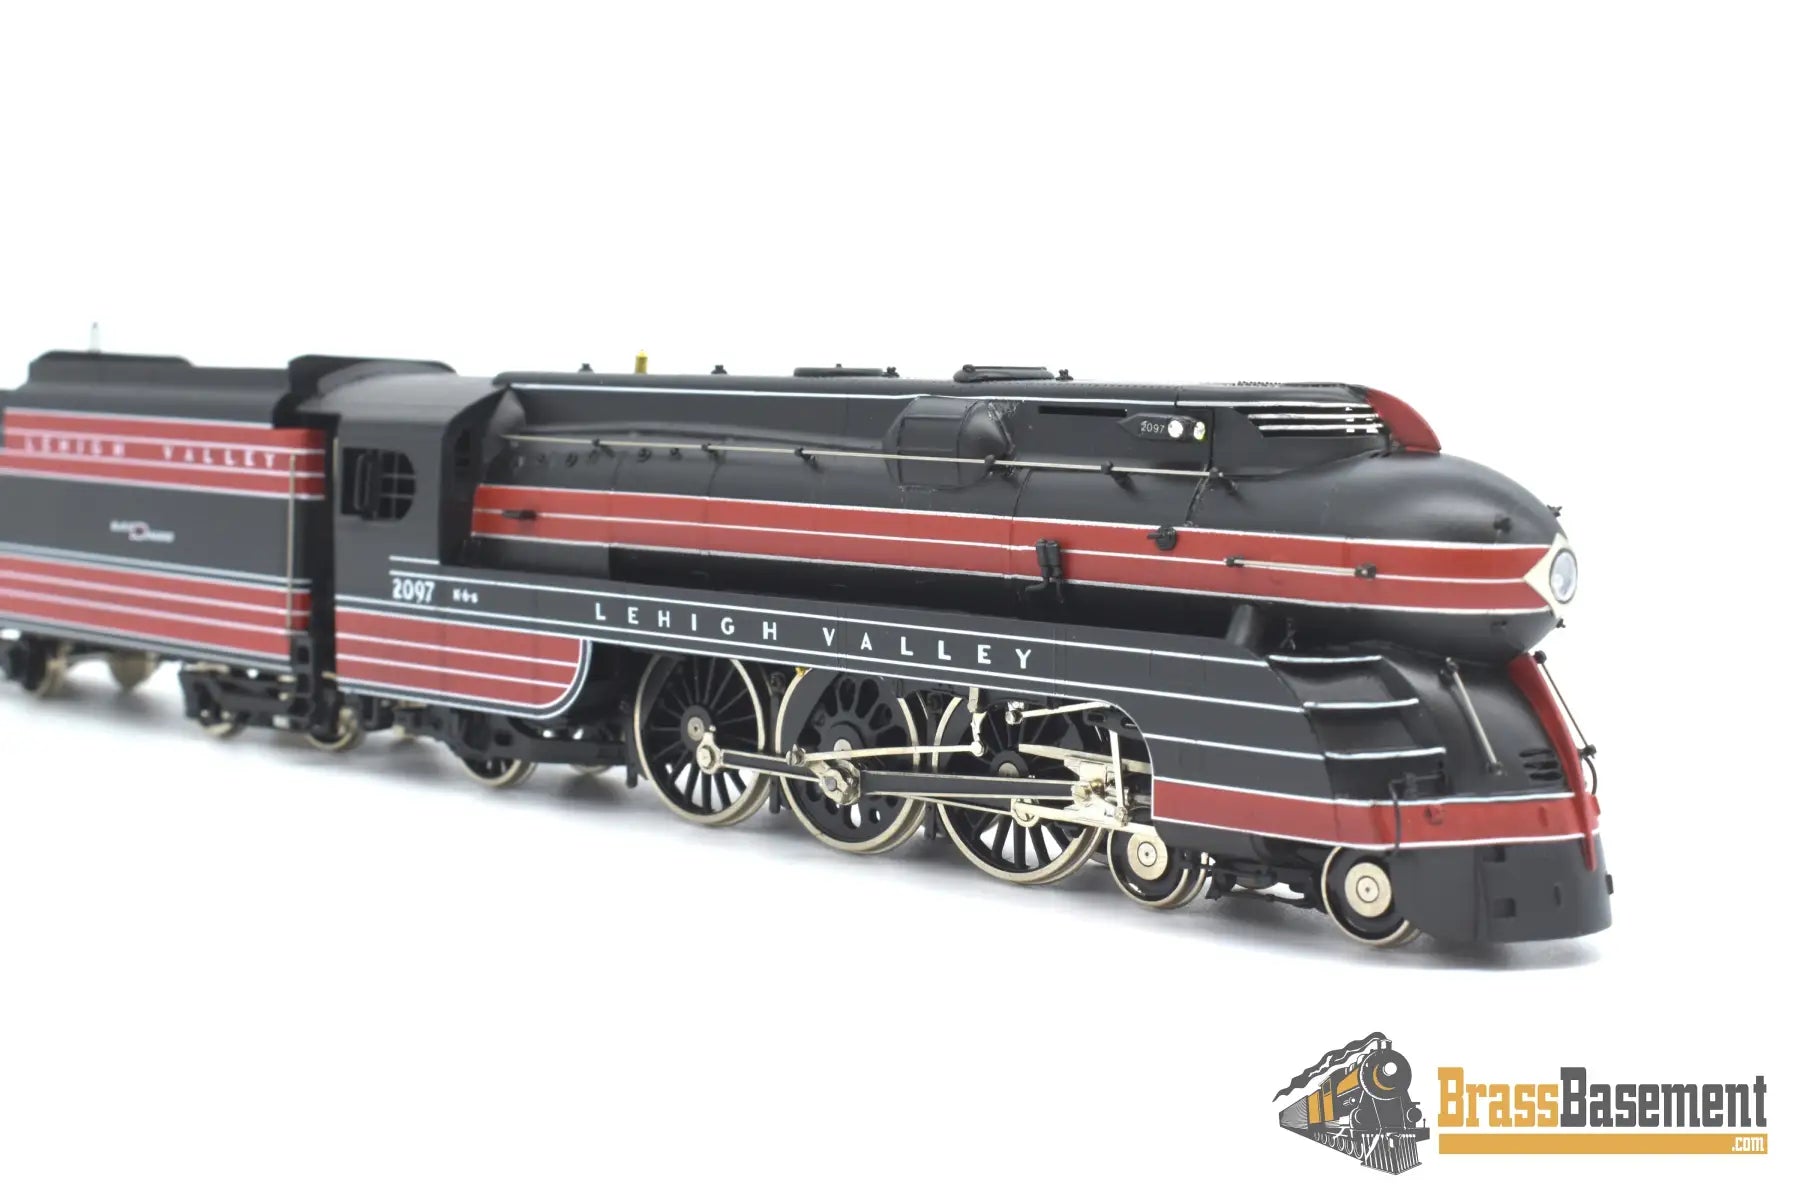 Ho Brass - Omi 1487.1 Lehigh Valley ‘Black Diamond’ K - 6S 4 - 6 - 2 #2097 F/P Steam